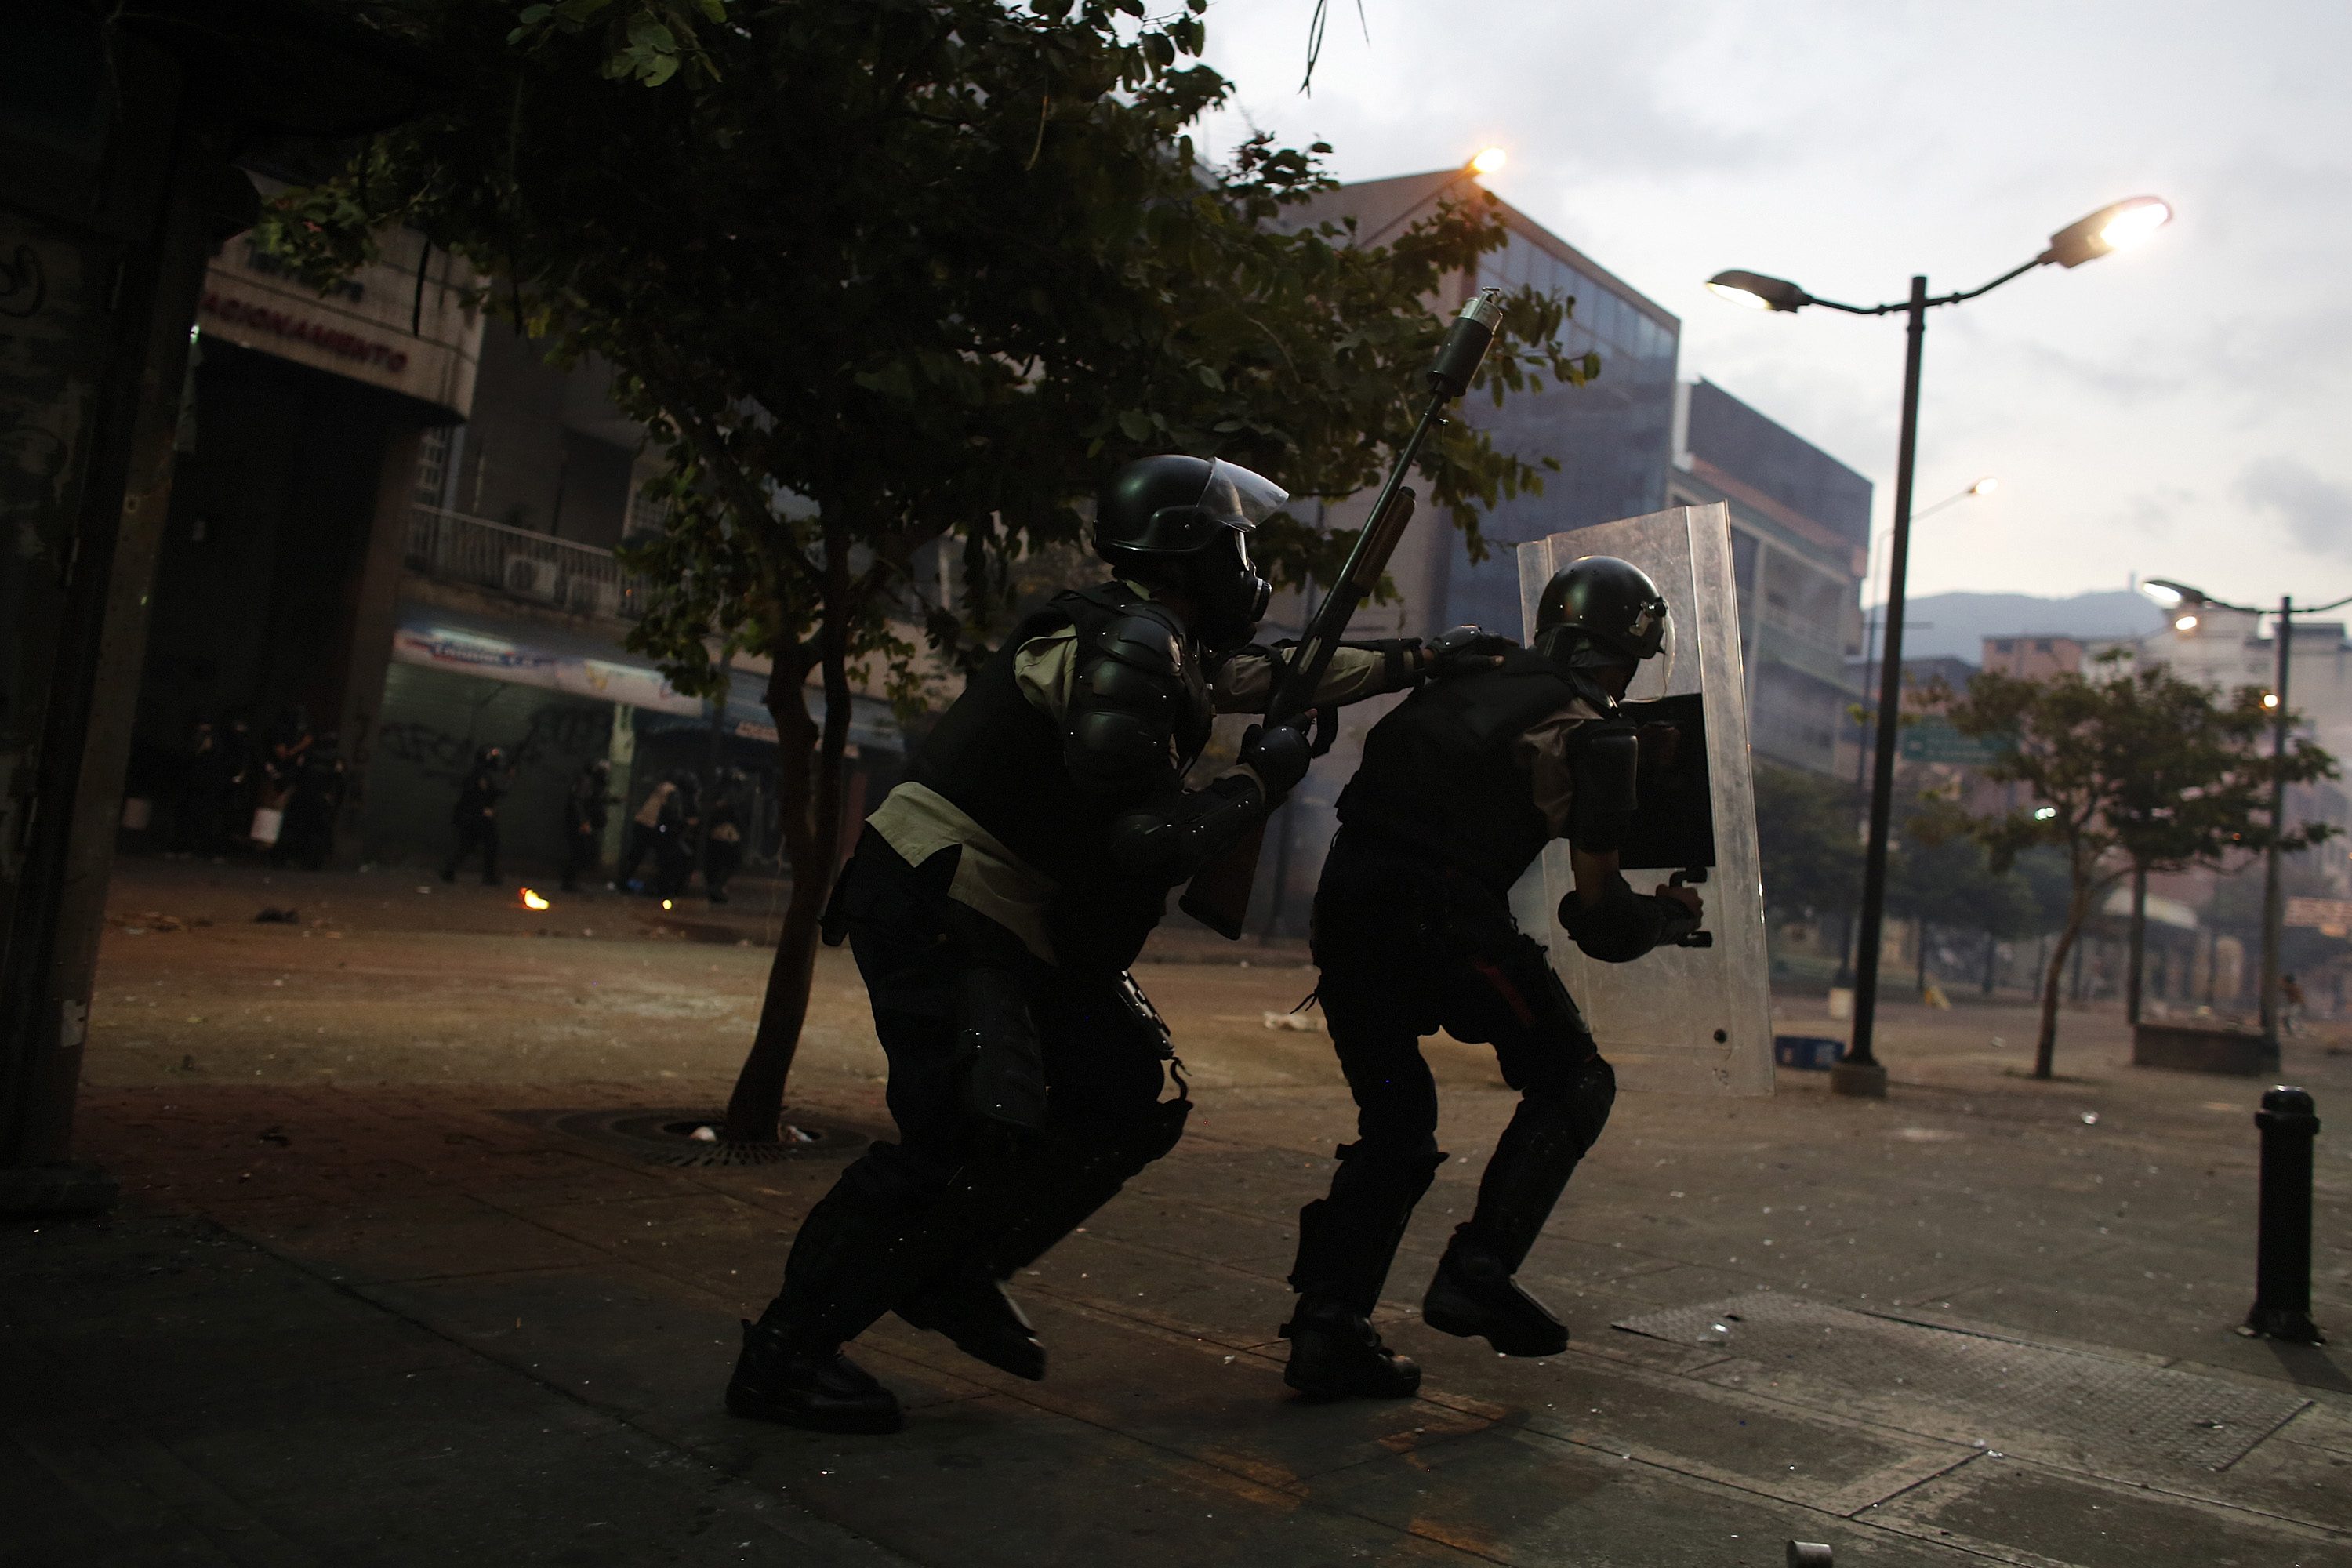 La fuerza pública reprime otra vez en Chacao 15M (Fotos)